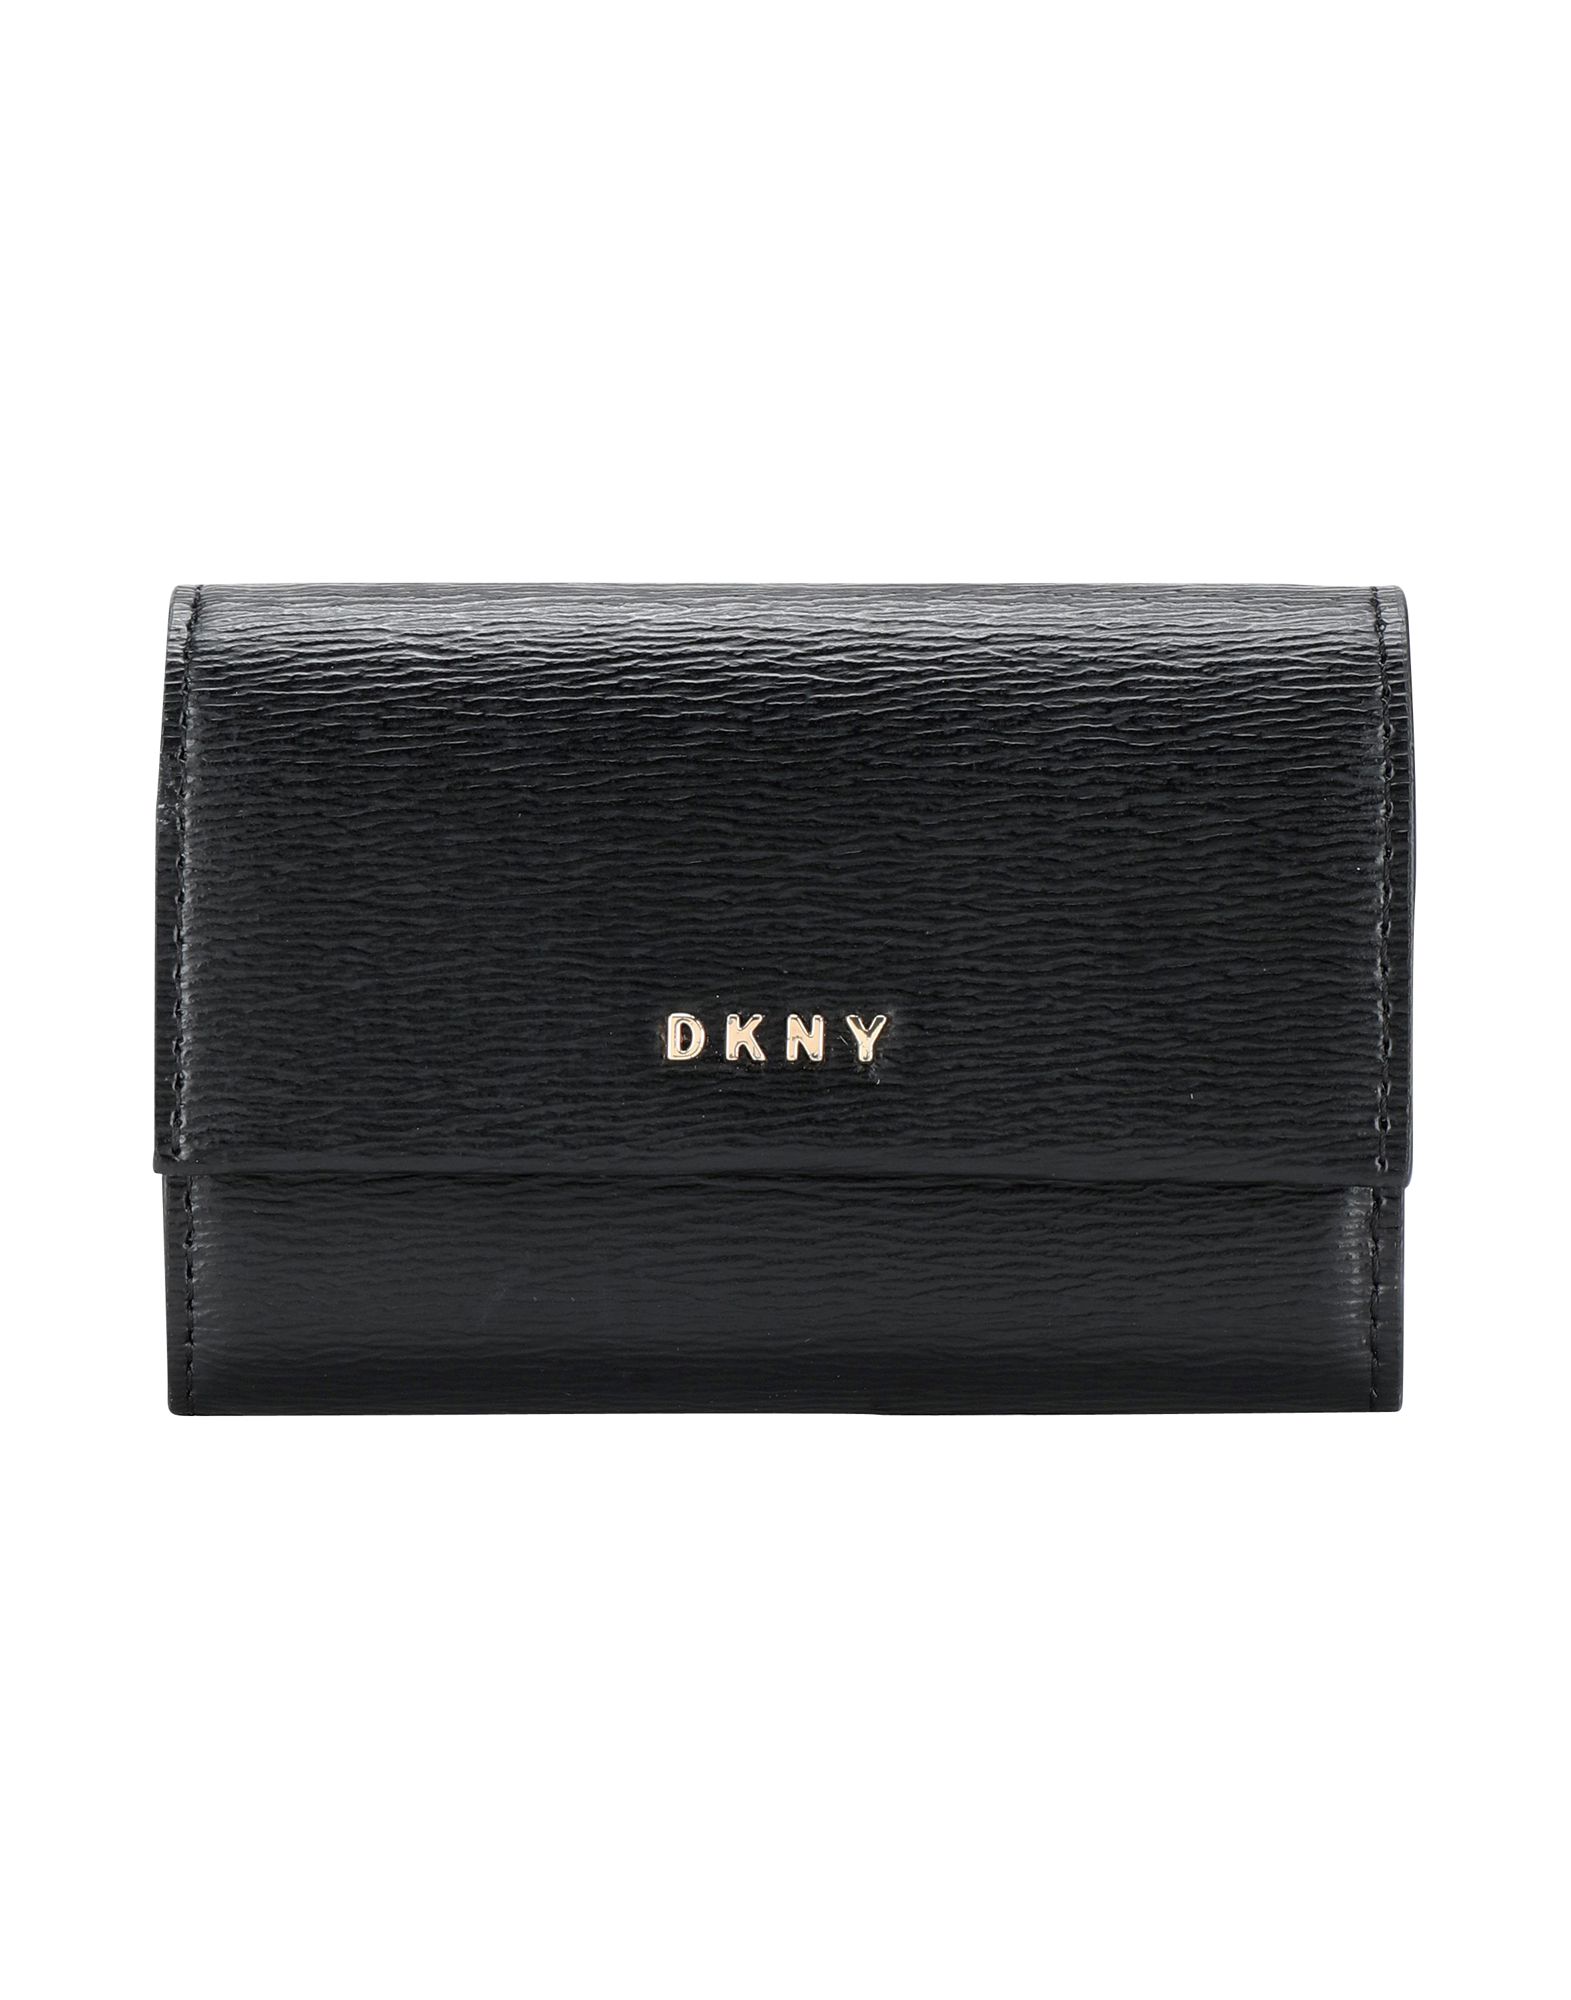 《送料無料》DKNY レディース 小銭入れ ブラック 牛革 100% BRYANT CARD CASE